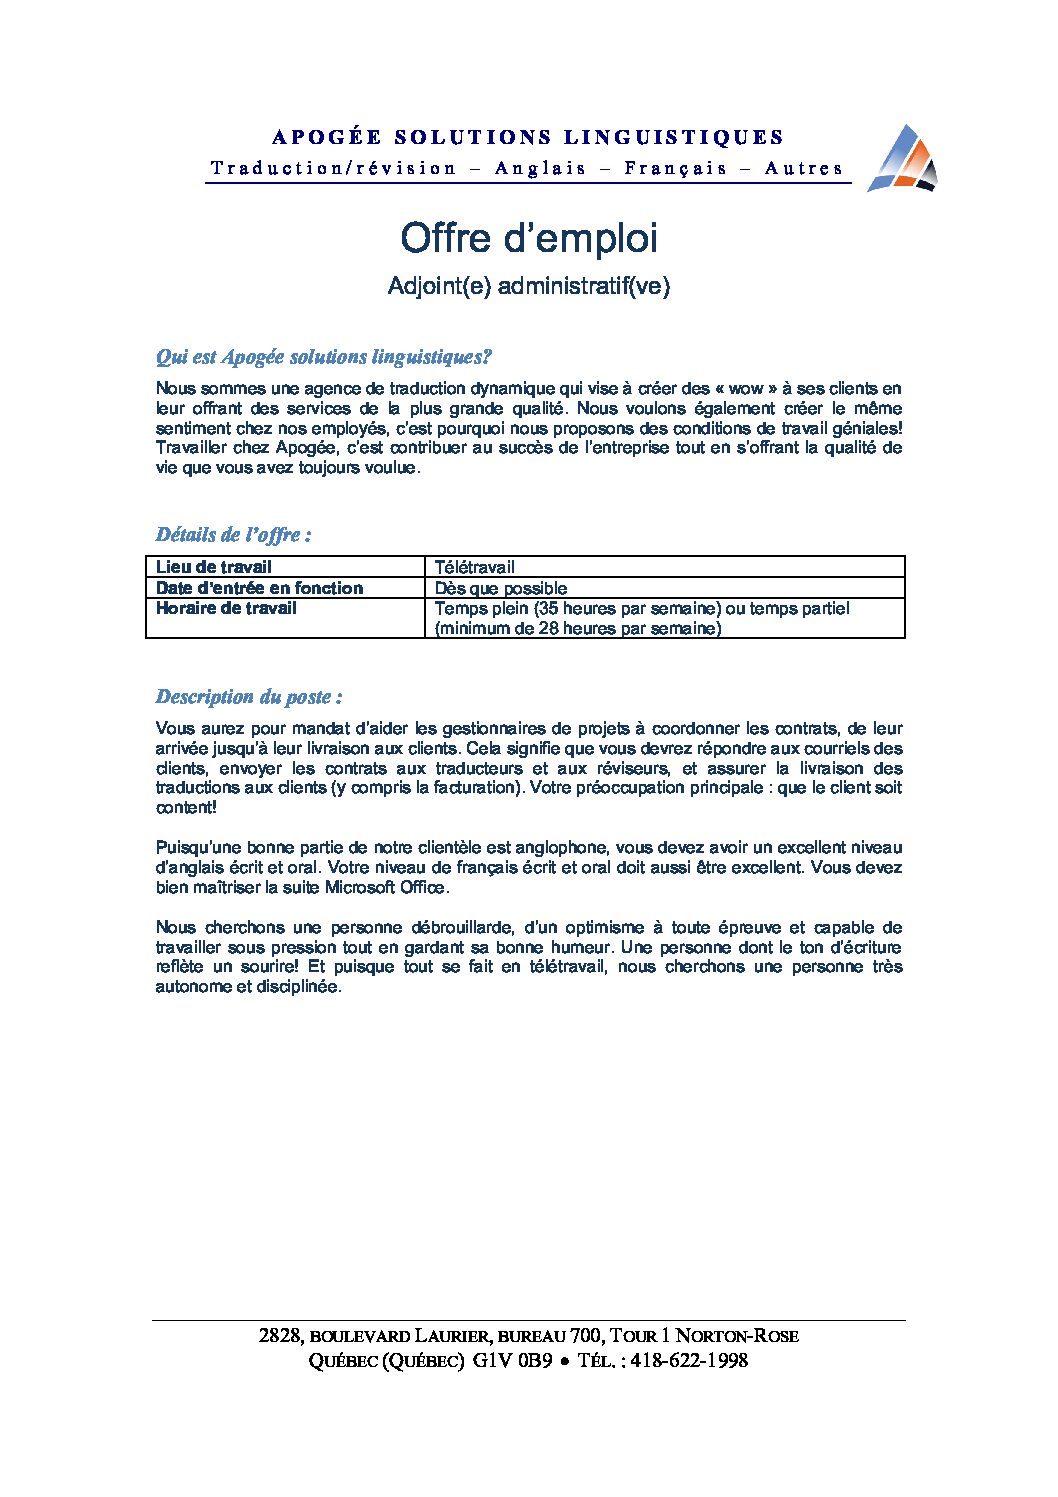 Offre d'emploi Adjoint administratif_août 2021